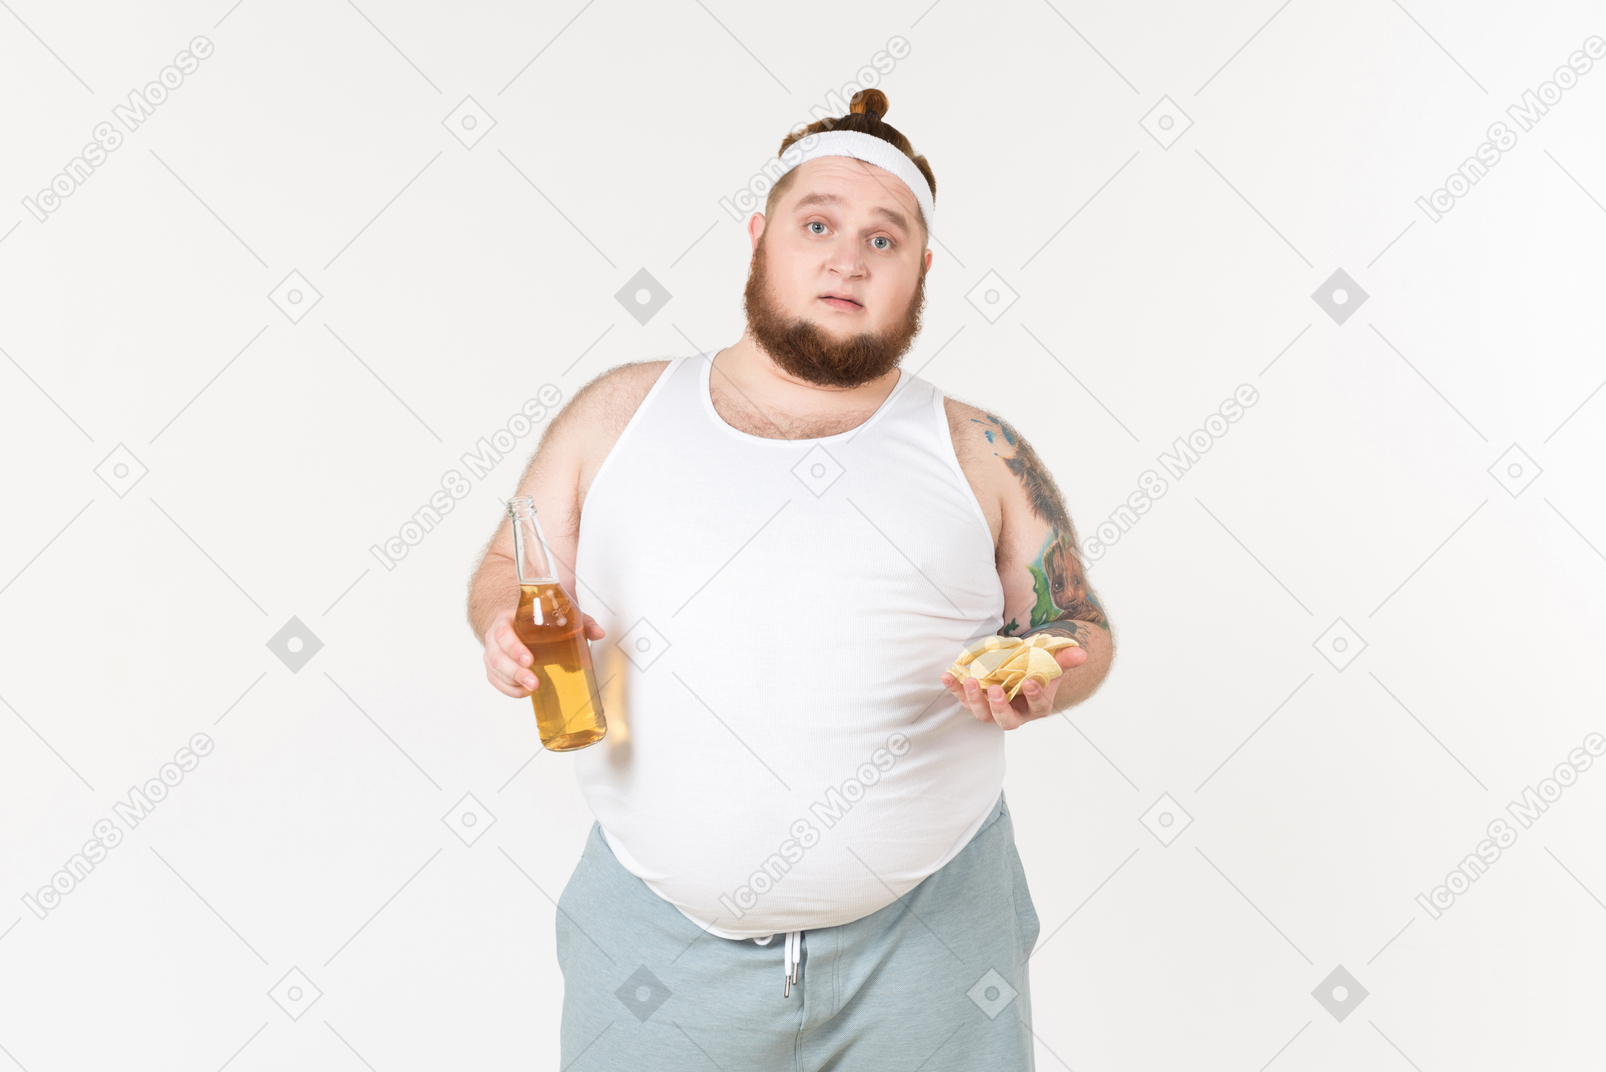 Un gros homme en tenue de sport avec une bouteille de bière et une poignée de chips